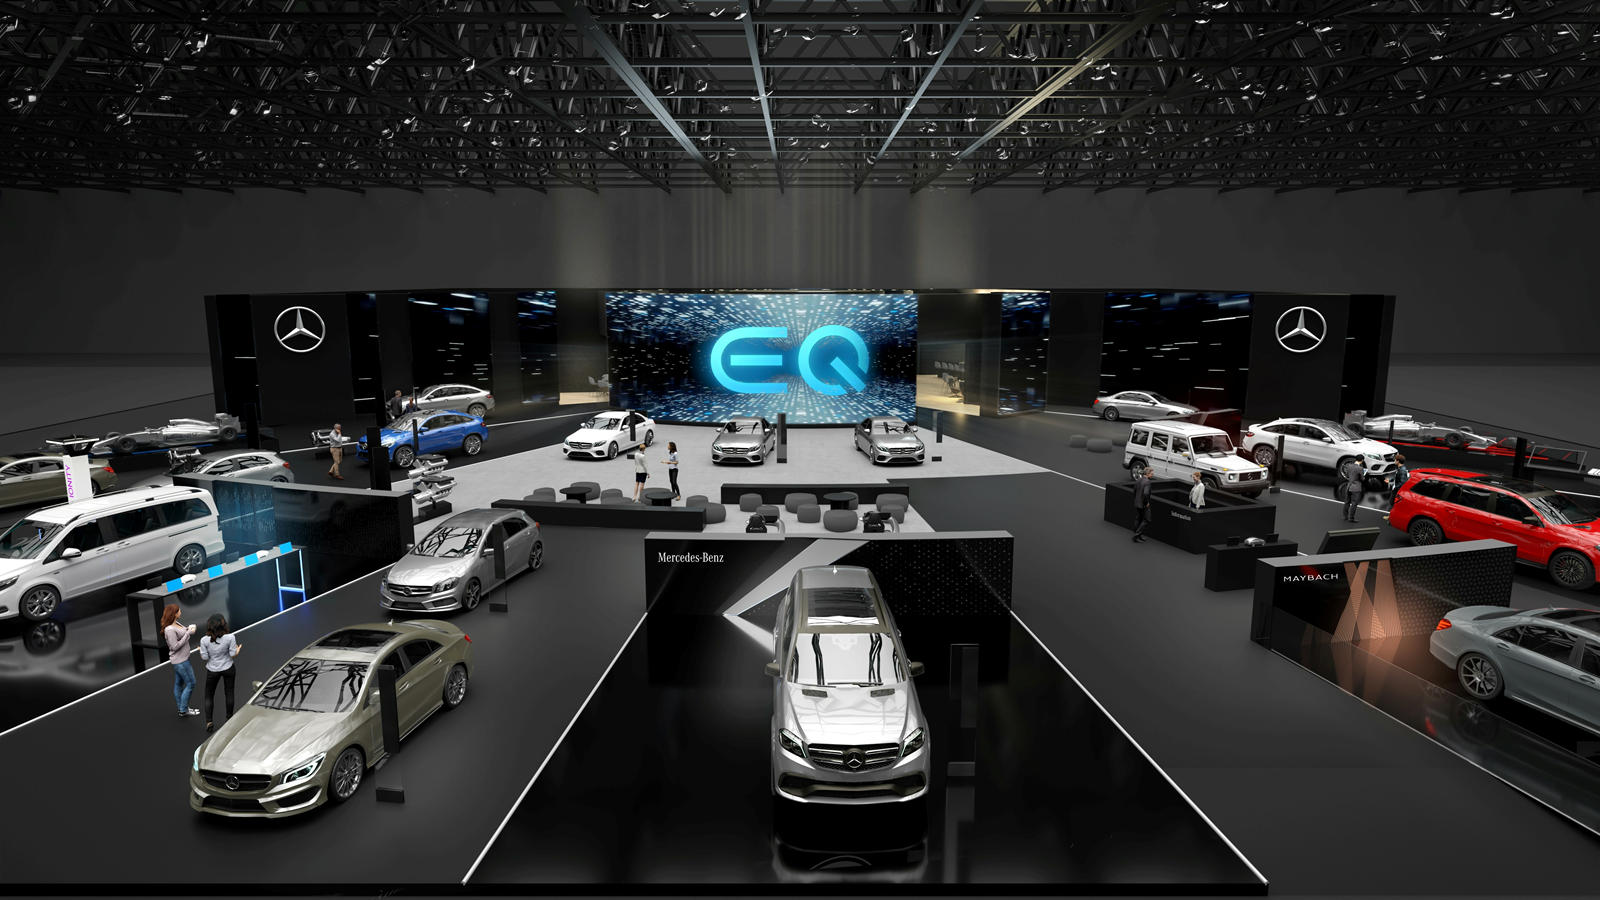 Также на выставке будет представлен концепт Mercedes Vision AVTR, впервые показанный на выставке бытовой электроники 2020. В отличие от большинства концепт-каров, Vision AVTR не демонстрирует будущую серийную модель и на самом деле был вдохновлен фил